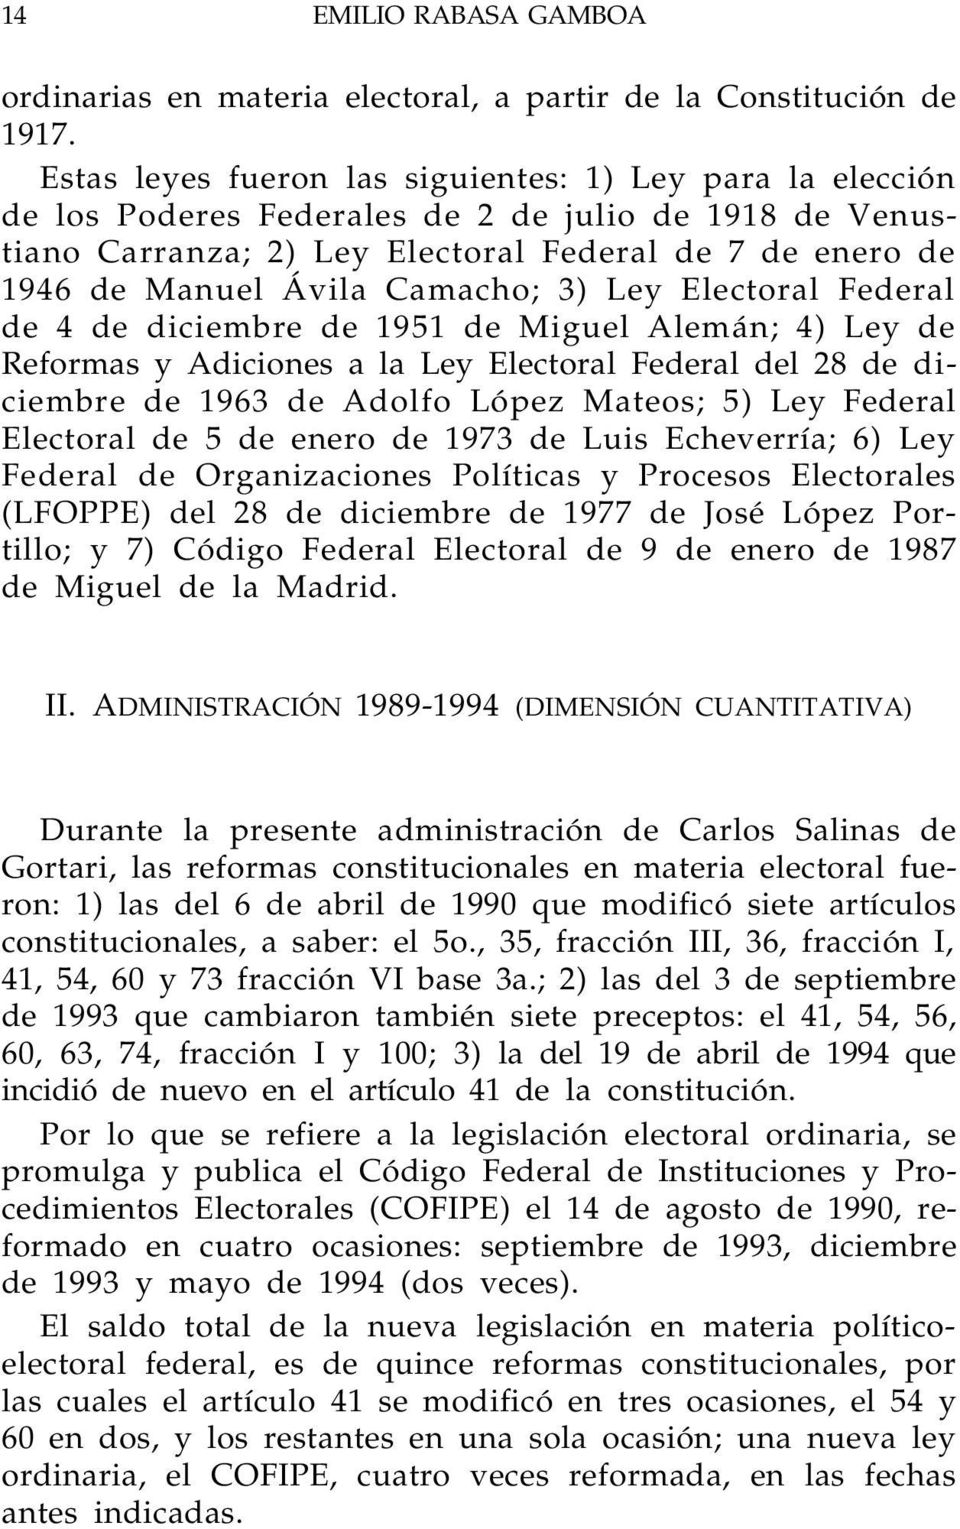 Camacho; 3) Ley Electoral Federal de 4 de diciembre de 1951 de Miguel Alemán; 4) Ley de Reformas y Adiciones a la Ley Electoral Federal del 28 de diciembre de 1963 de Adolfo López Mateos; 5) Ley